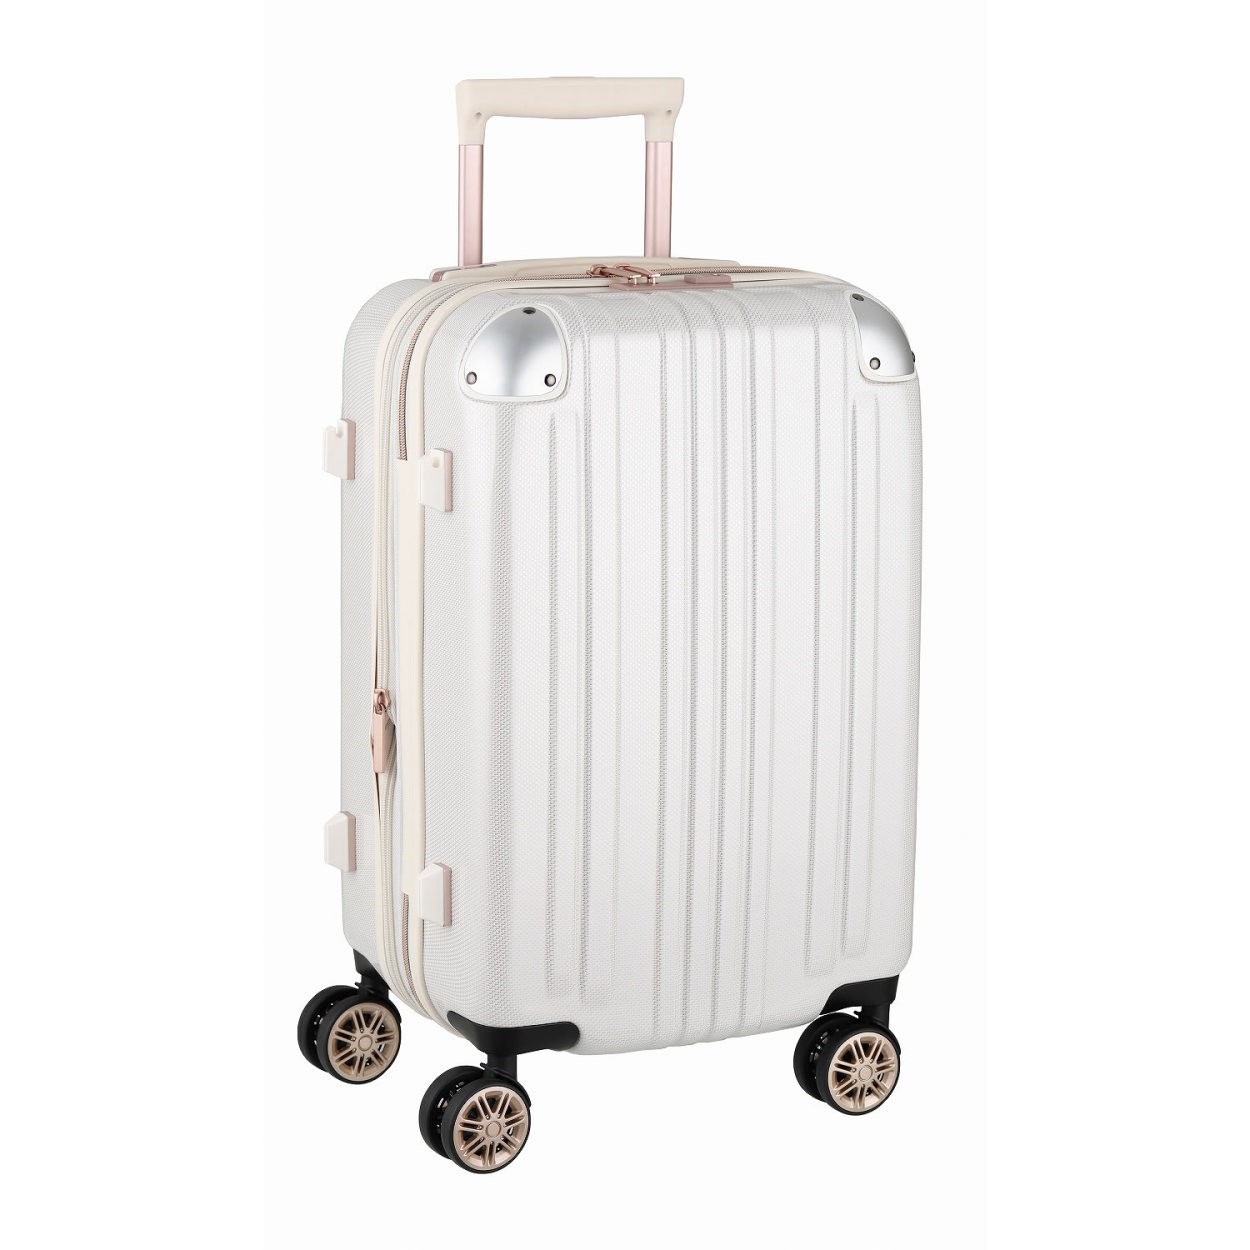 スーツケース キャリーバッグ トランクケース レディースバッグ Sサイズ 小型 超軽量 おしゃれ かわいい 拡張 キャリーケース キャリーバッグ 5122 55 5122 55 スーツケースのマリエナマキ 通販 Yahoo ショッピング